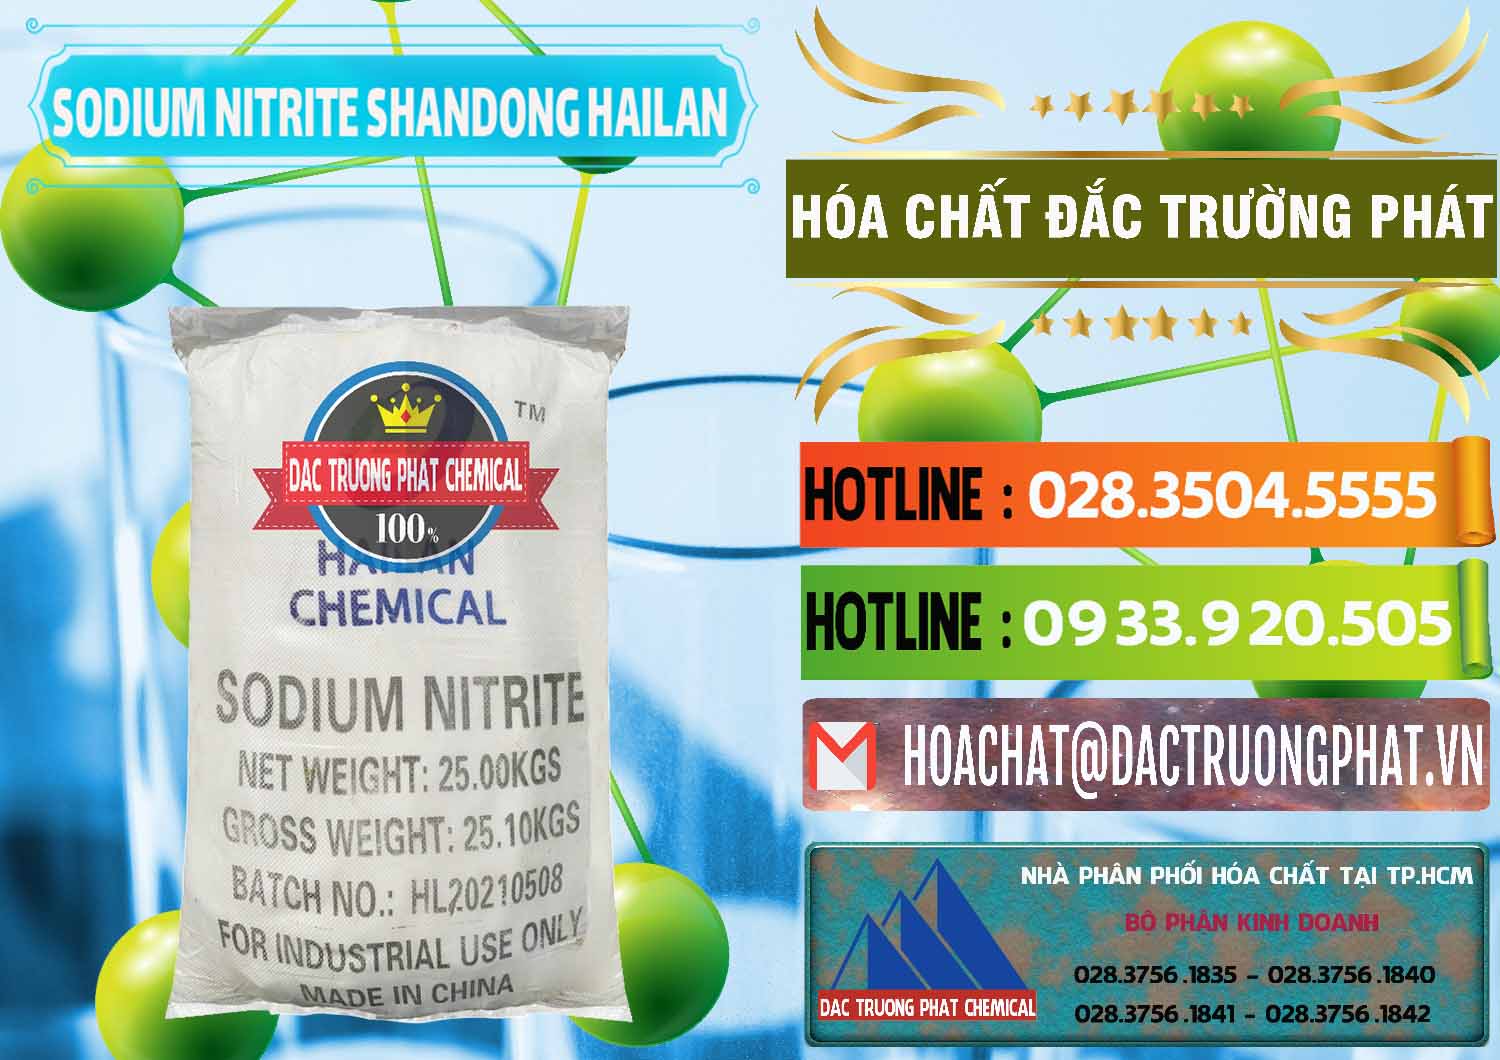 Đơn vị bán _ cung cấp Sodium Nitrite - NANO2 99.3% Shandong Hailan Trung Quốc China - 0284 - Công ty cung cấp và kinh doanh hóa chất tại TP.HCM - cungcaphoachat.com.vn